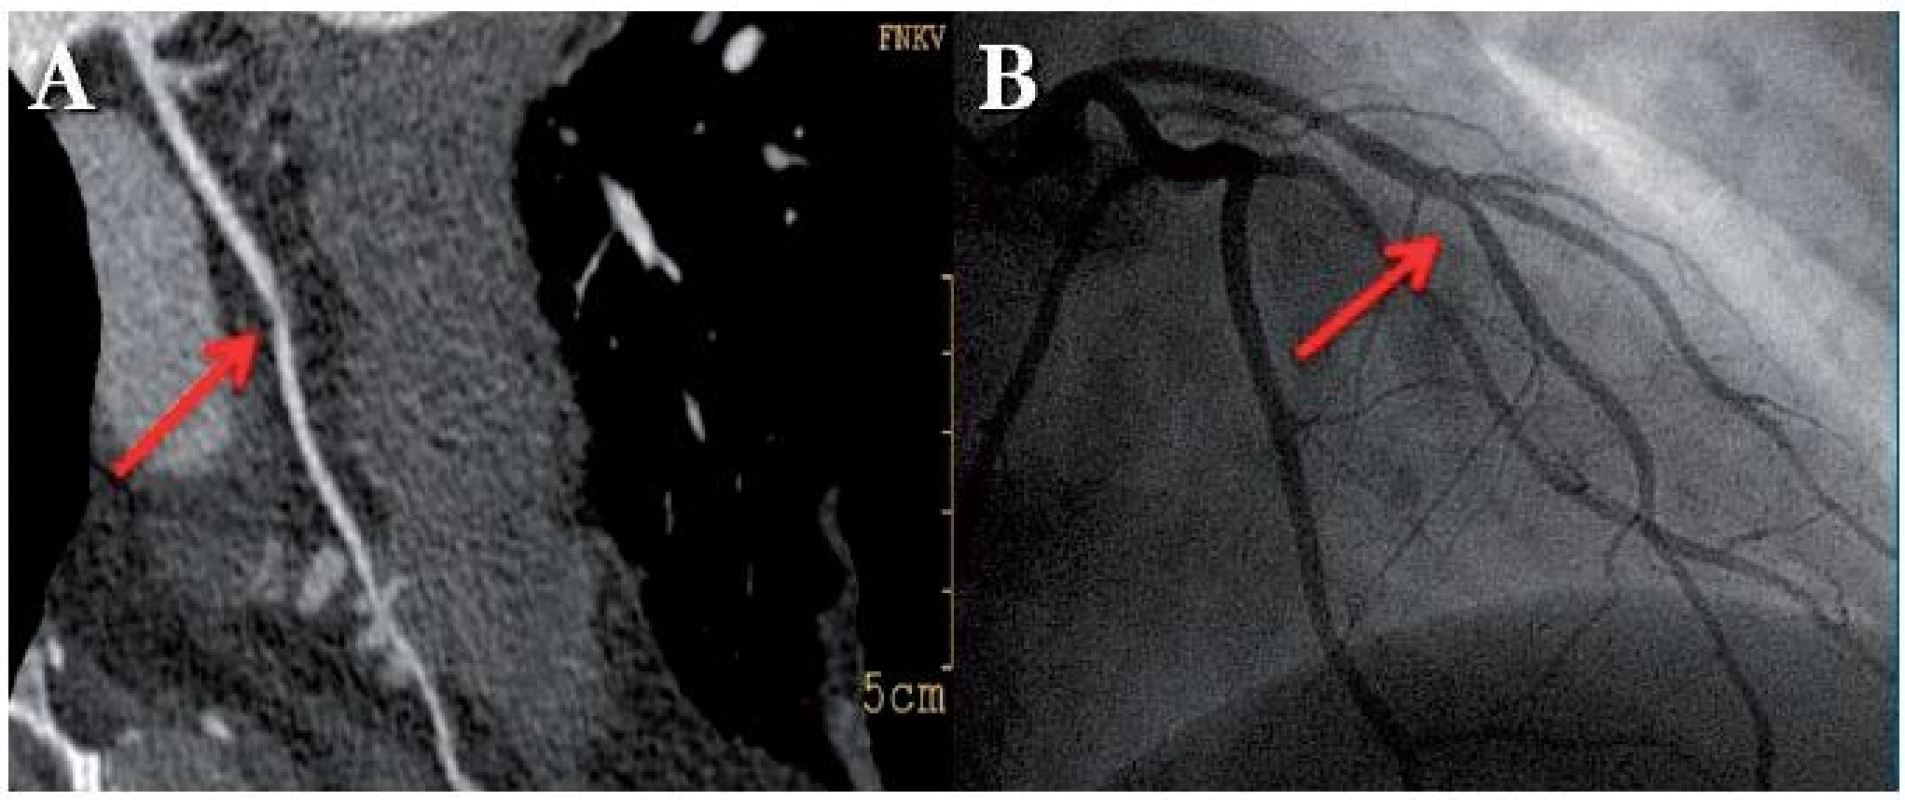 Padesátidvouletá nemocná vyšetřena pro bolesti na hrudi, kalciové skóre 0. CT koronarografie prokázala měkký plát v středním úseku ramus interventricularis anterior (RIA) (A). Invazivní koronarografie nález potvrdila (B), pacientce byla provedena PCI s implantací stentu.